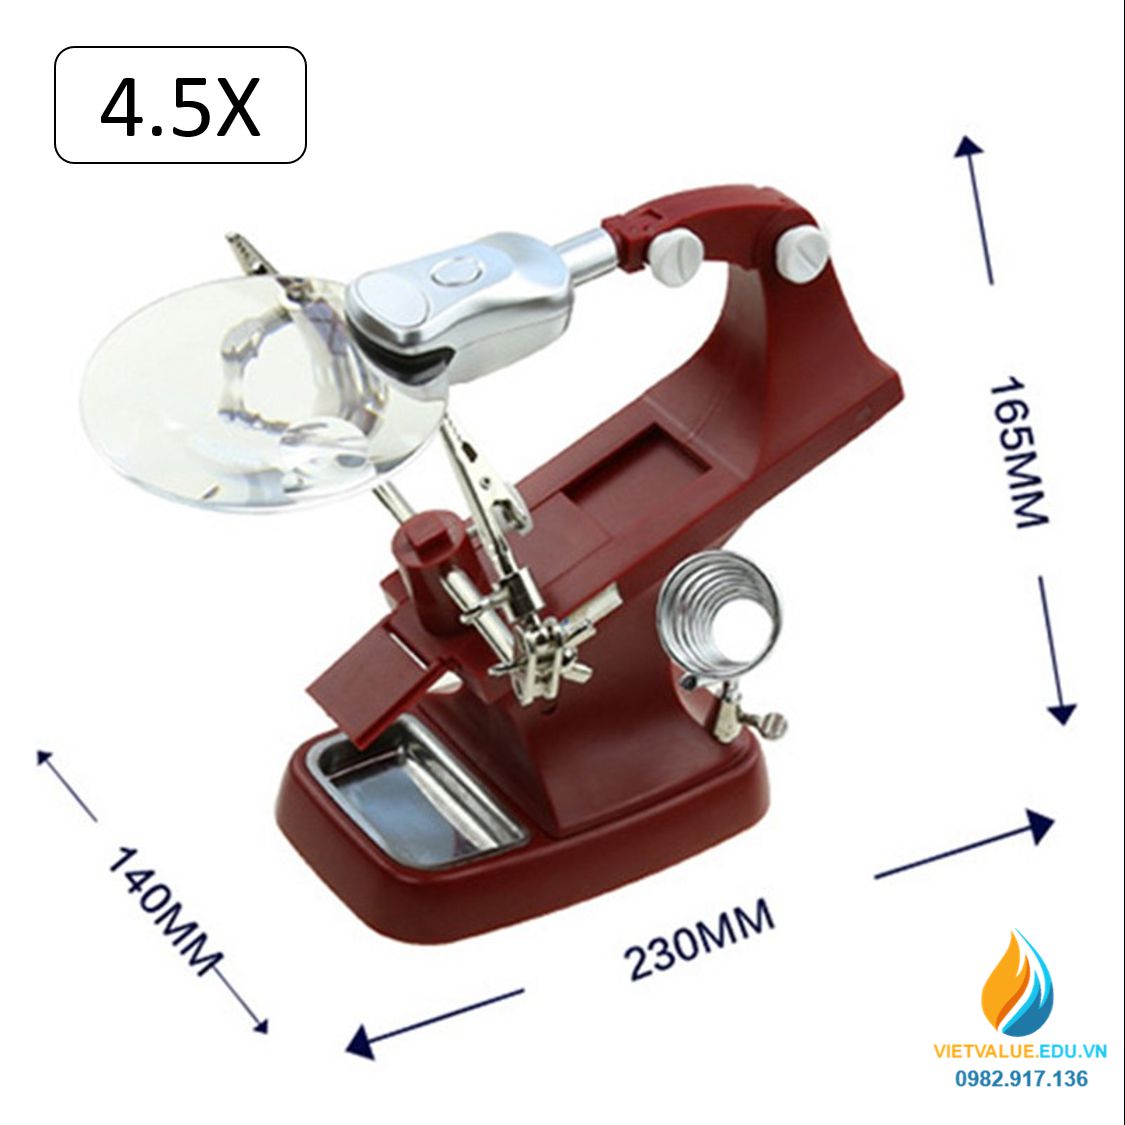 Bộ kính lúp sửa chữa vi mạch điện tử 7023A, độ phóng đại 4.5 lần sử dụng 3 pin AAA